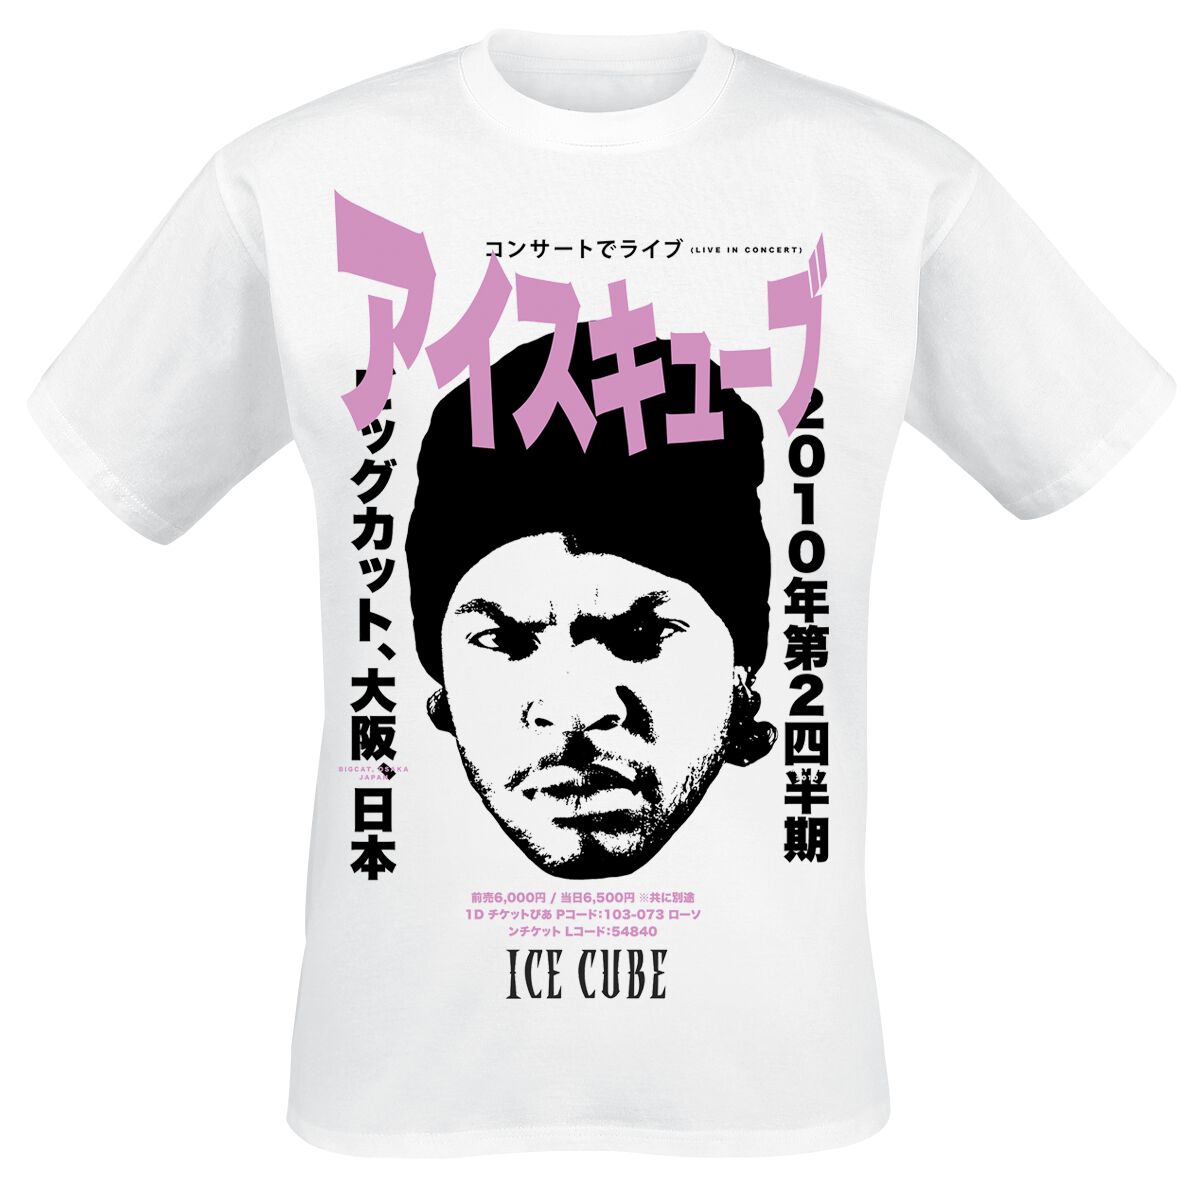 Ice Cube T-Shirt - Kanji - S bis L - für Männer - Größe S - weiß  - Lizenziertes Merchandise!